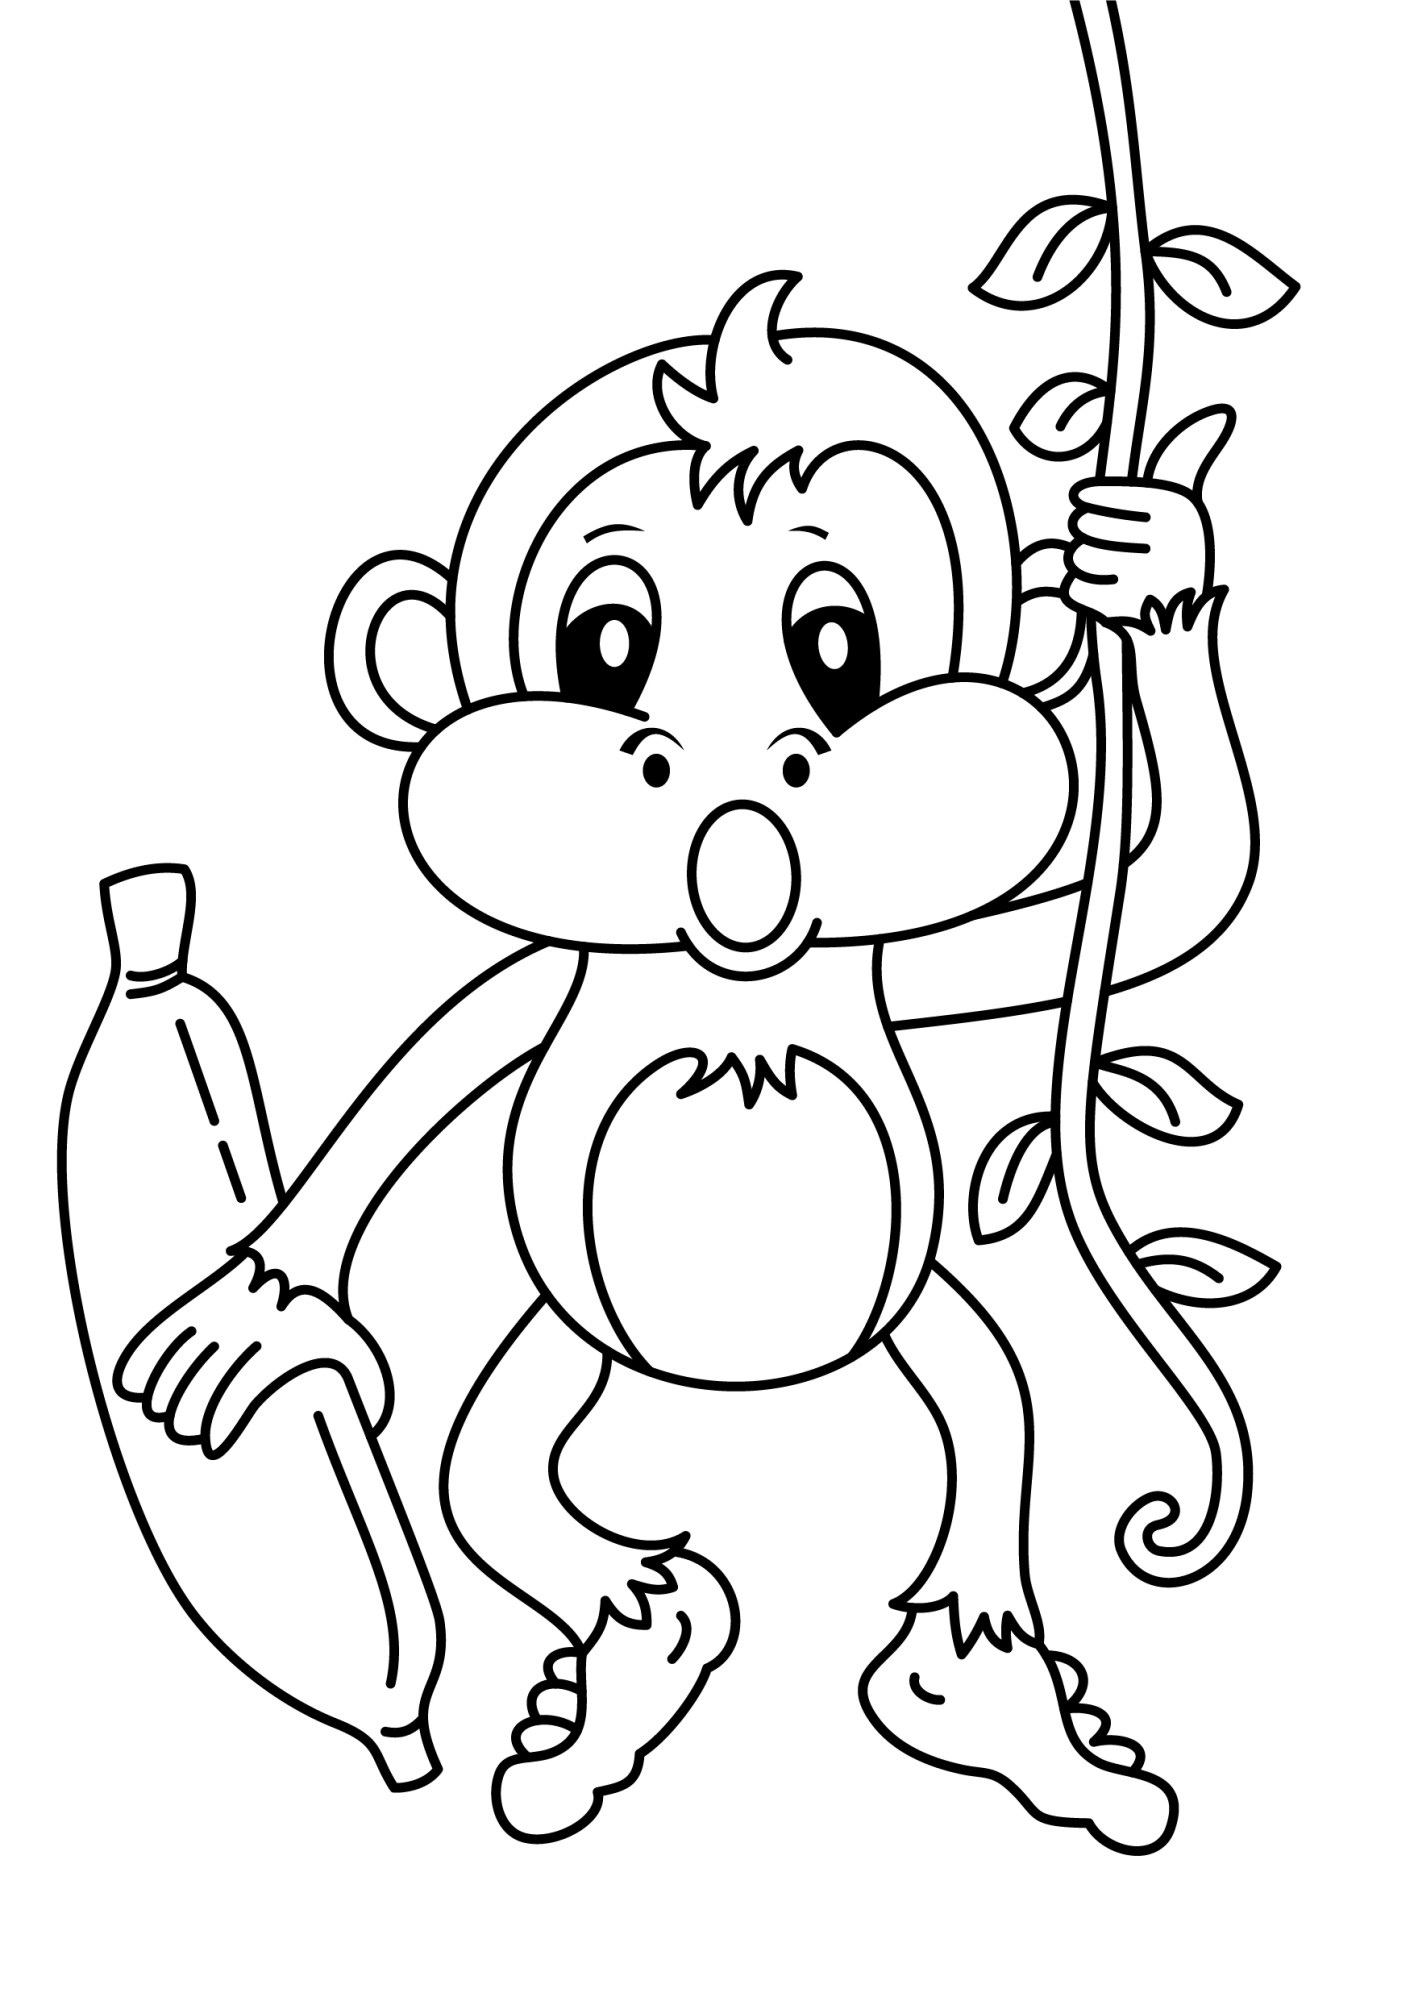 Раскраска для детей: малыш обезьяны с бананом висит на лиане